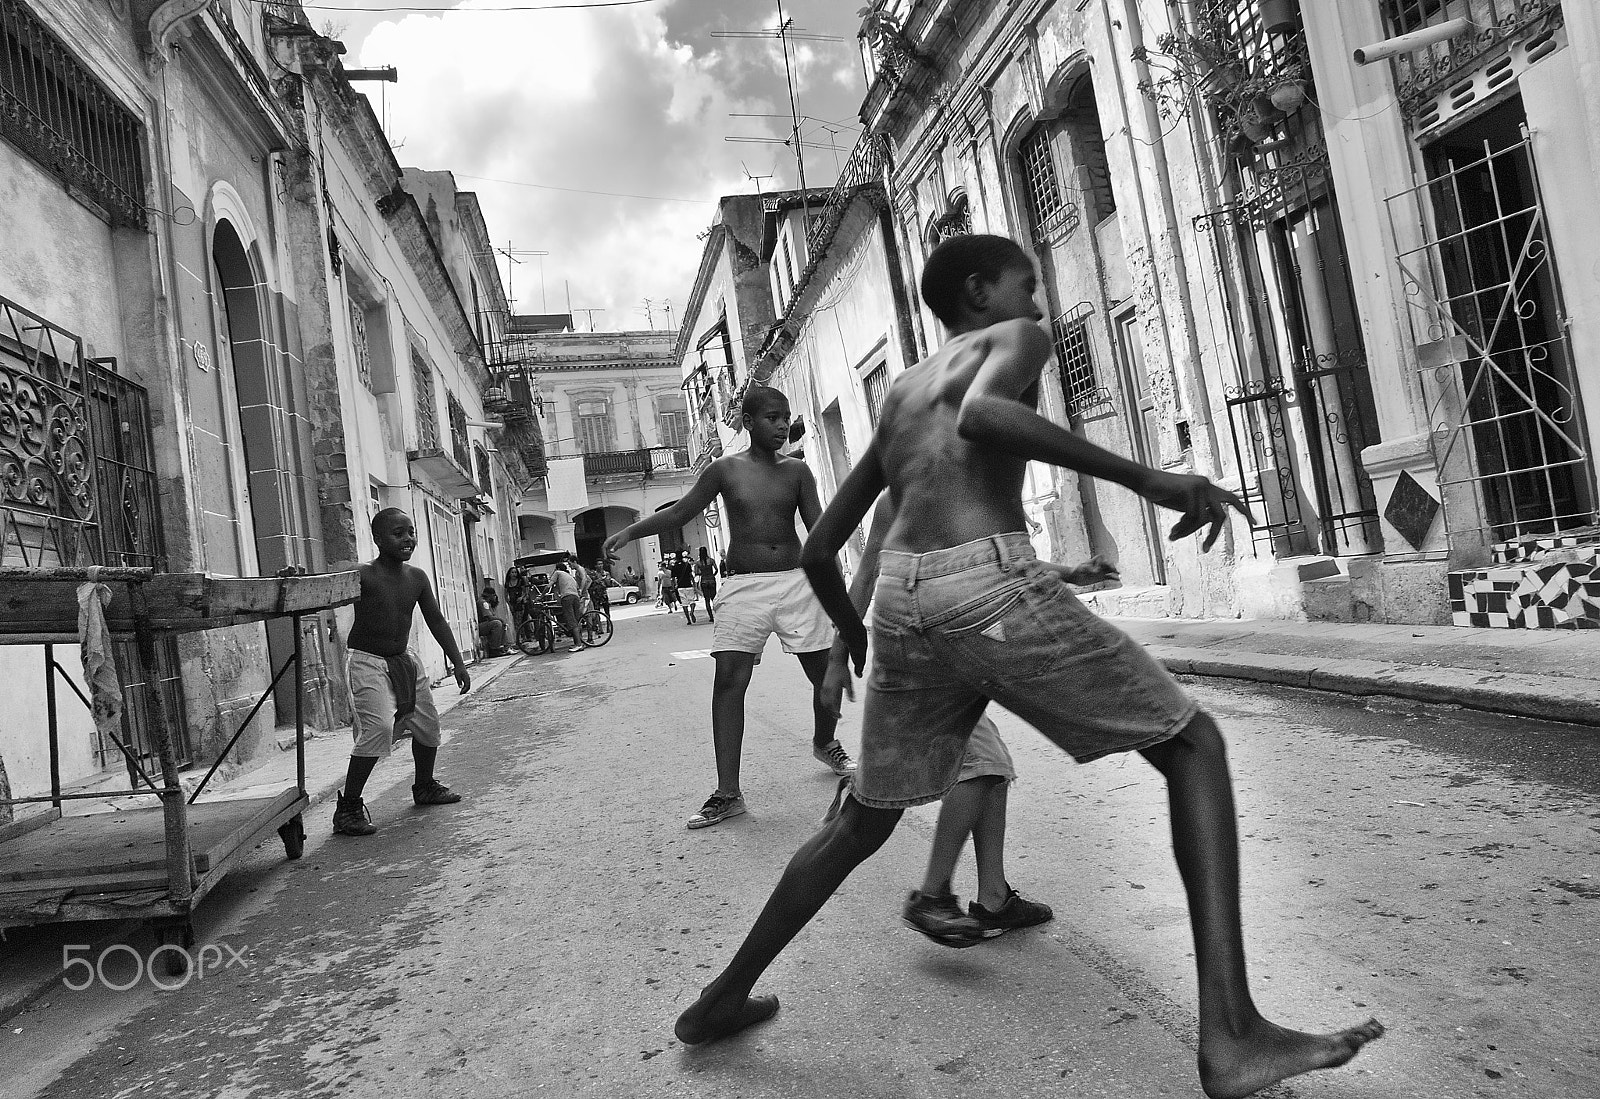 Nikon D80 + Nikon AF-S DX Nikkor 16-85mm F3.5-5.6G ED VR sample photo. Havana kids photography